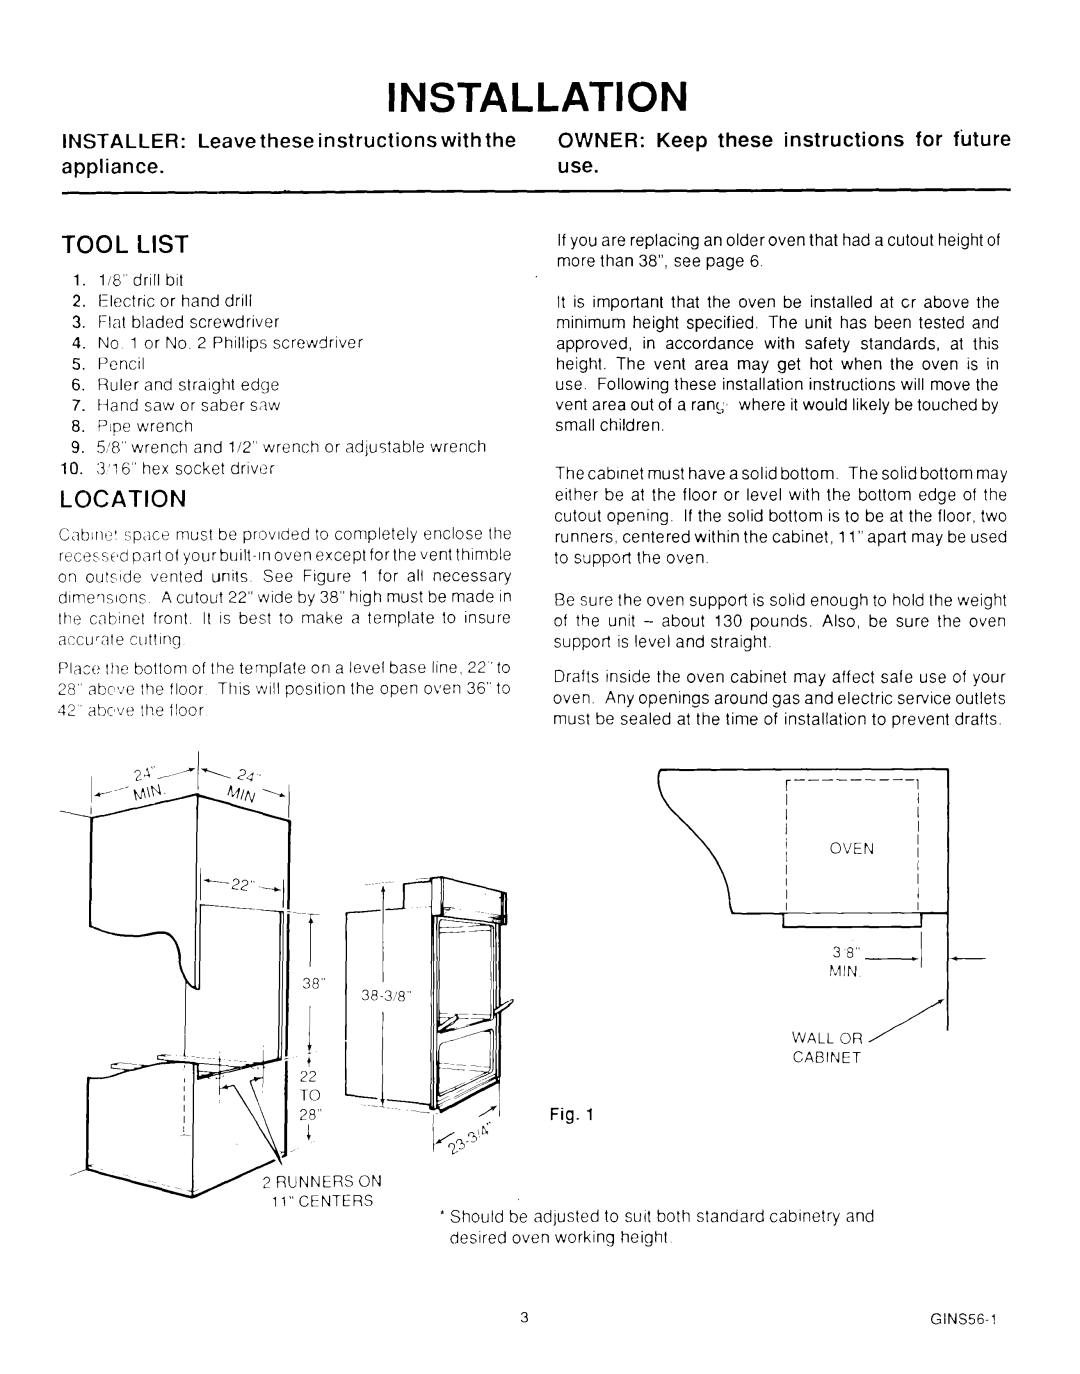 Roper MN11020(344197), B875 manual Installation, Tool List, Location 